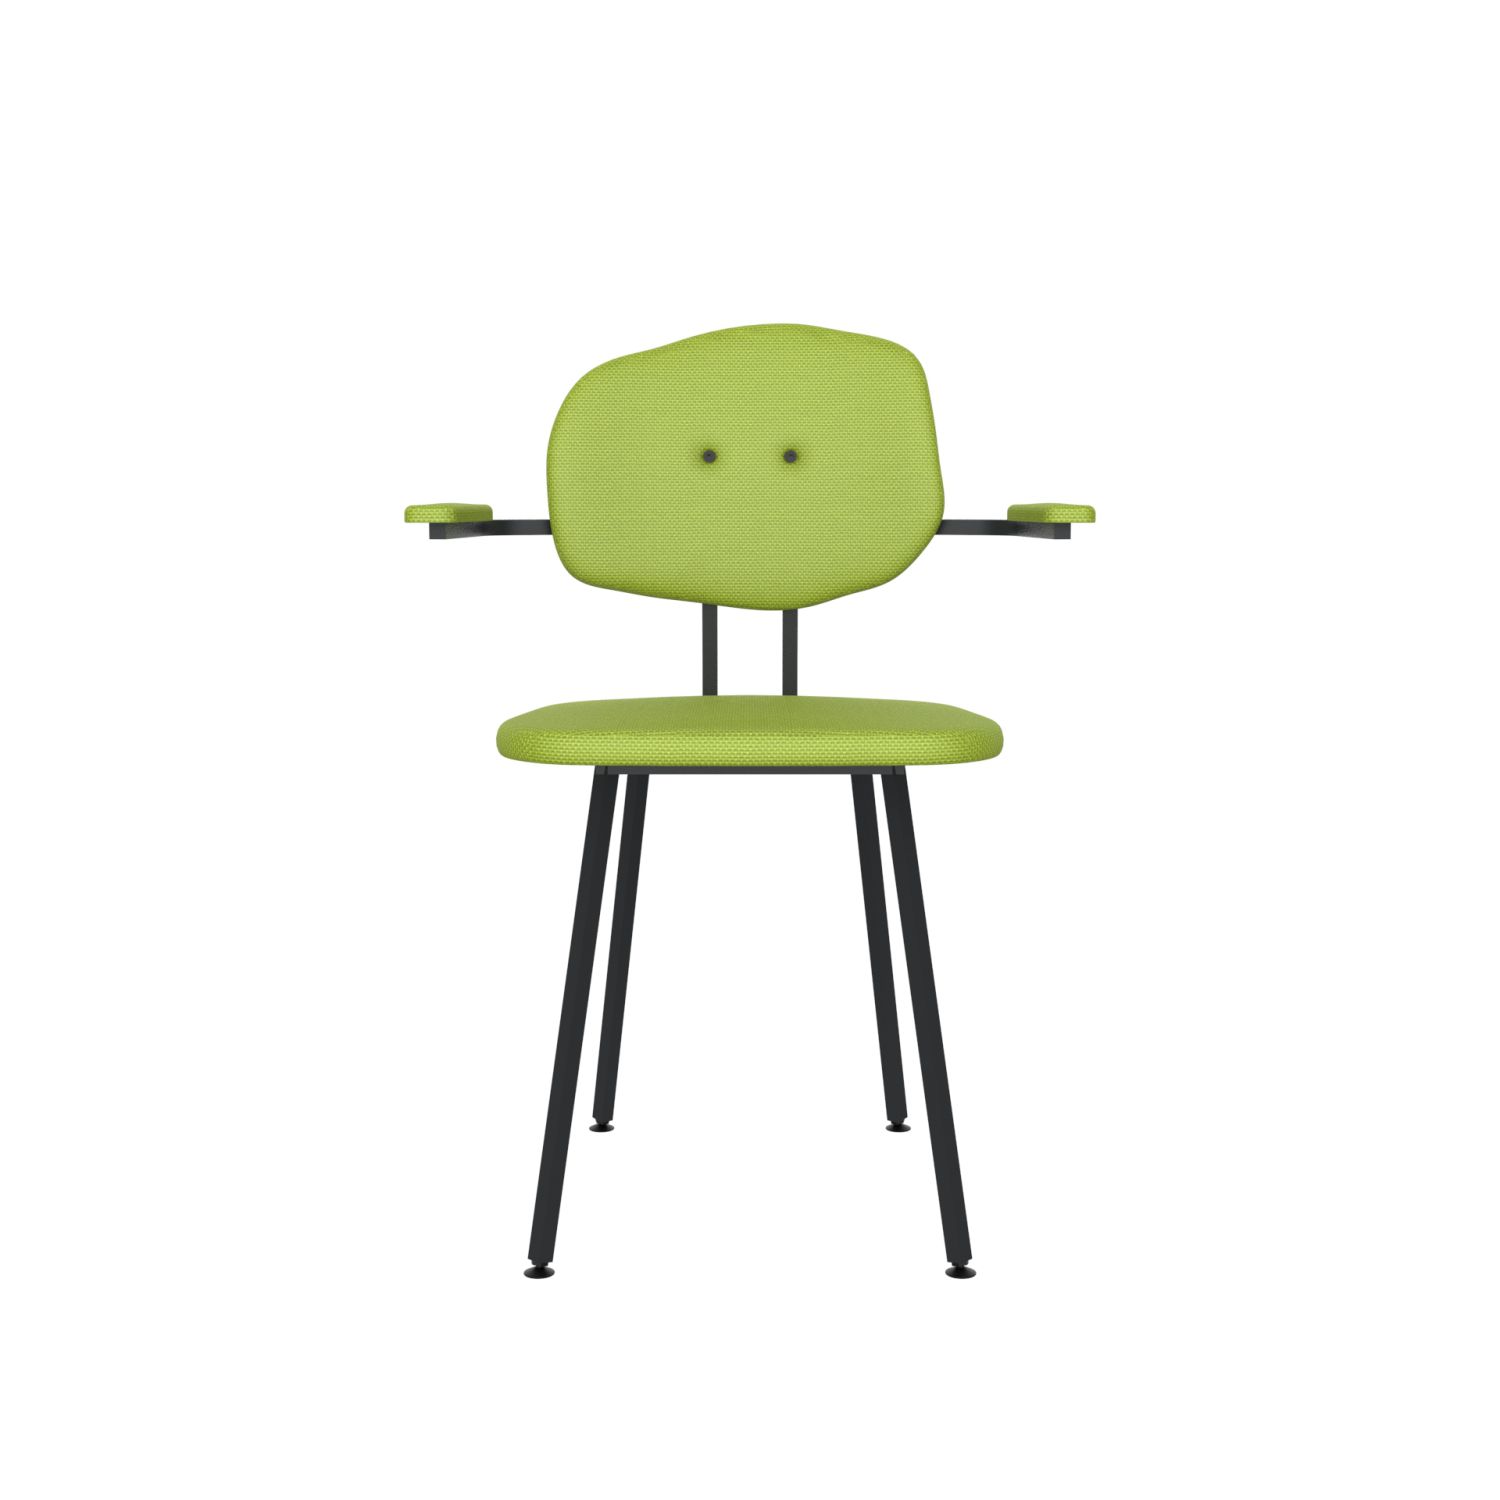 lensvelt maarten baas chair 102 not stackable with armrests backrest e fairway green 020 black ral9005 hard leg ends